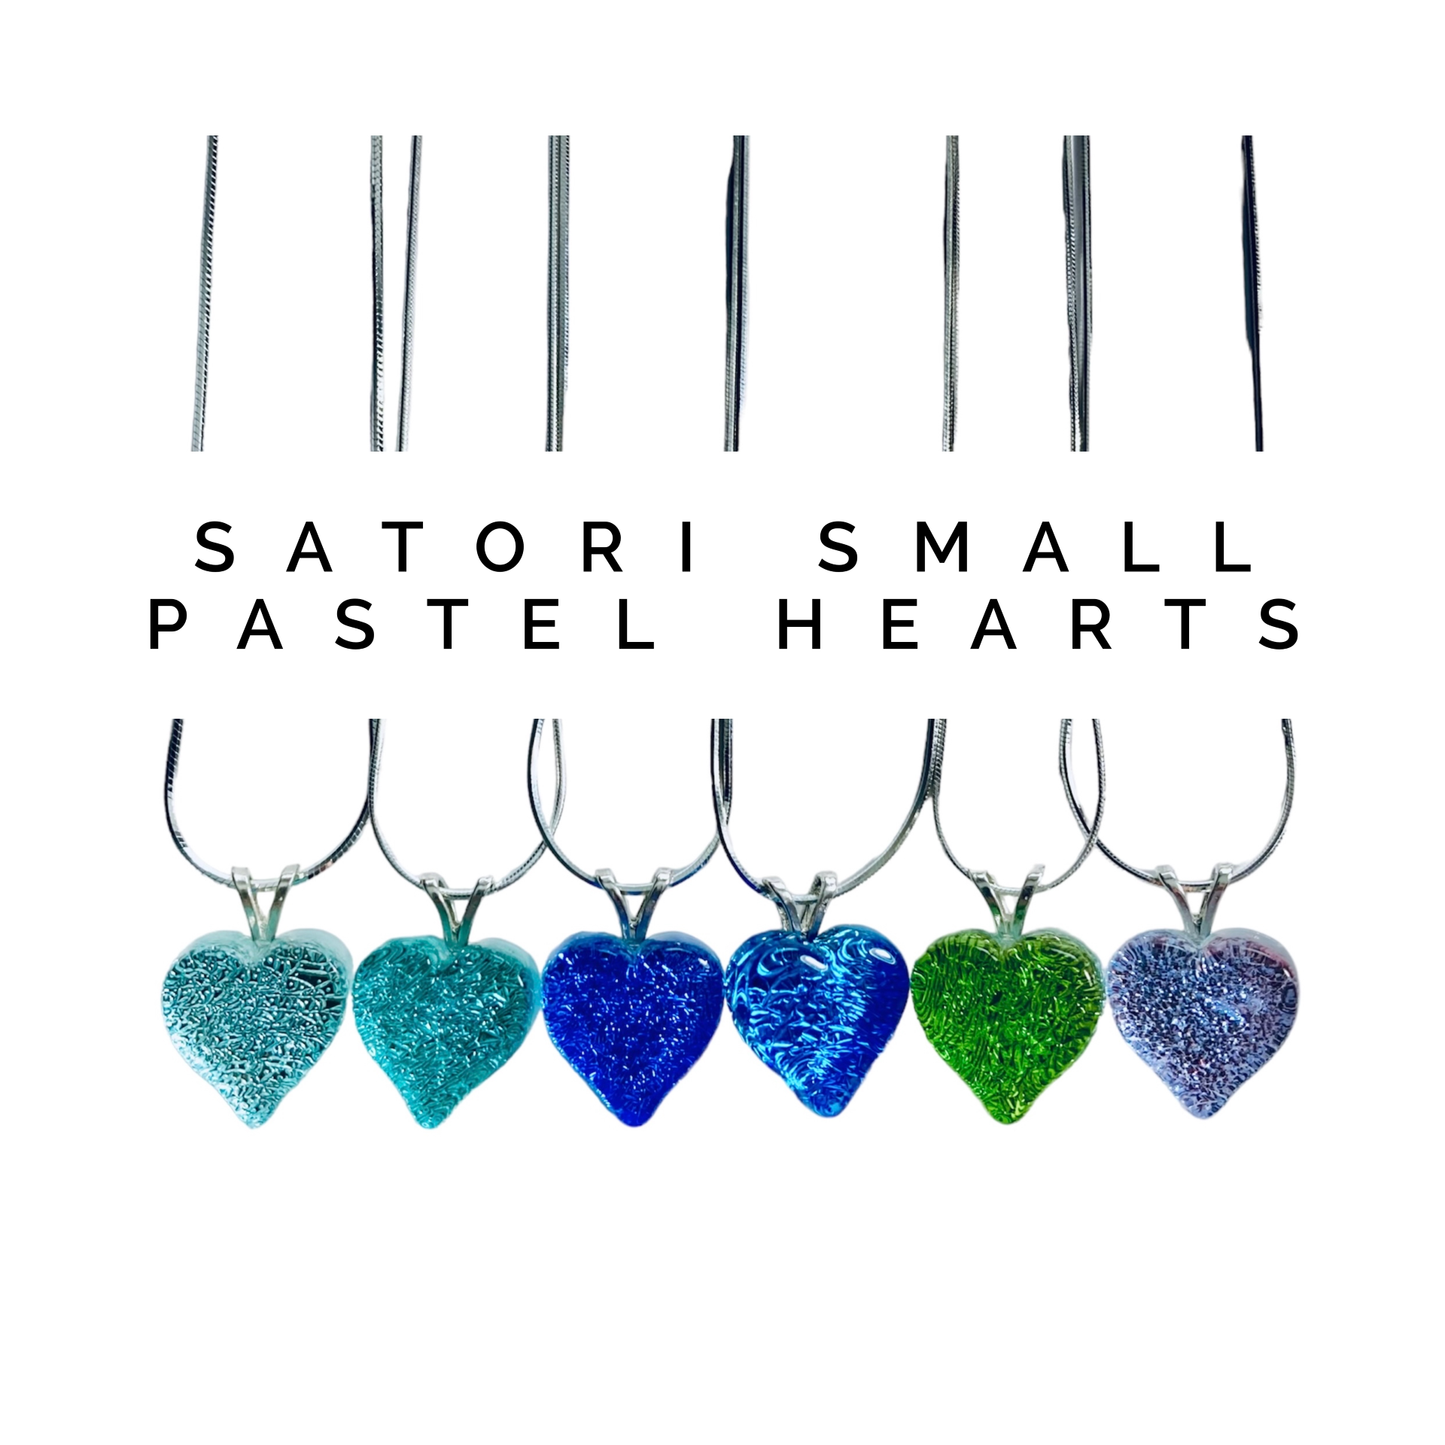 Satori Small Hearts